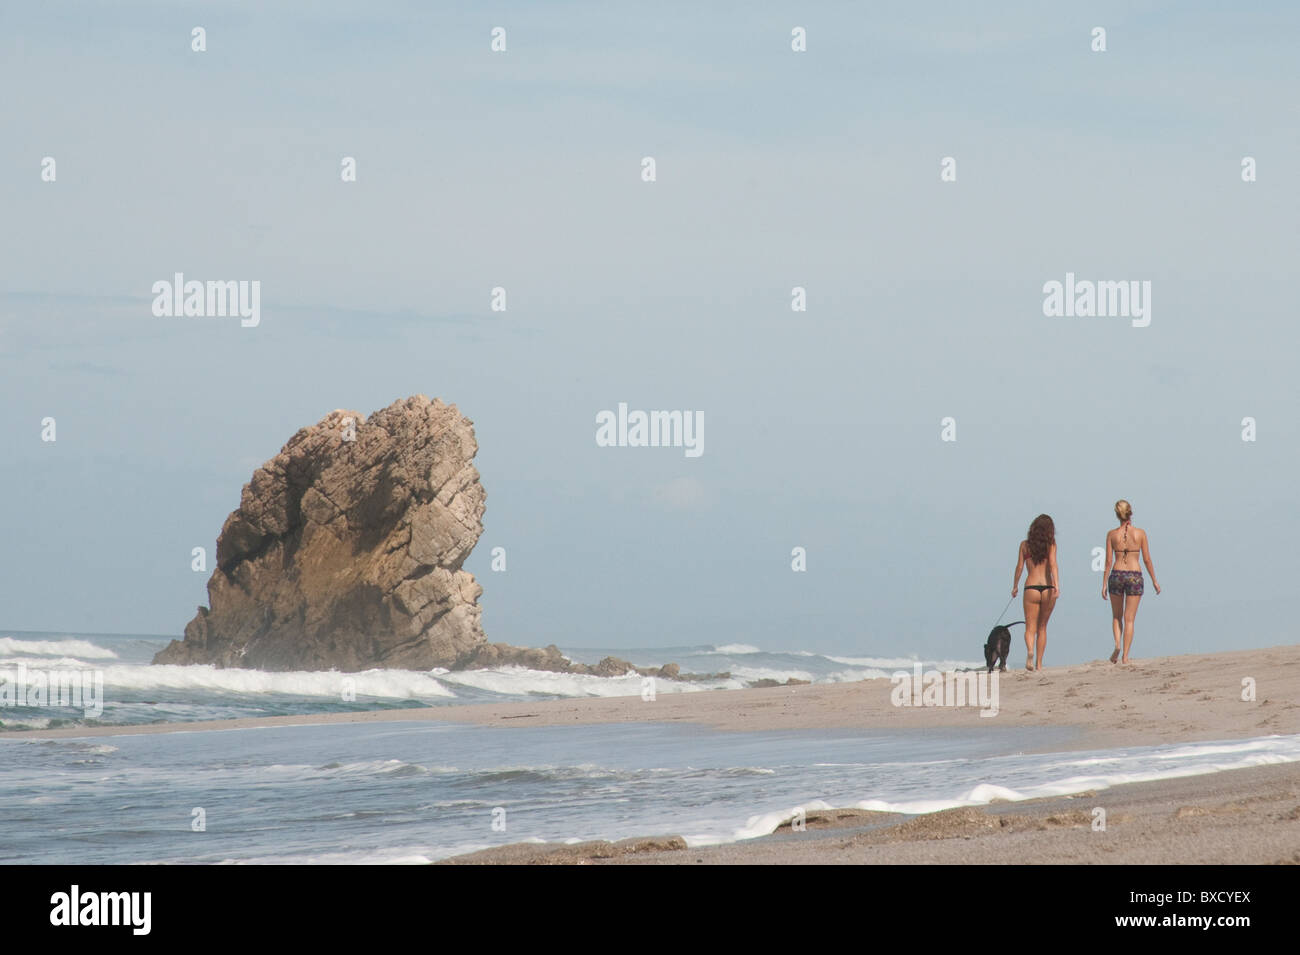 2 distante figure in abiti nuotare per passeggiare sulla spiaggia di sabbia in un giorno nuvoloso con un cane legato passando una pila di roccia Foto Stock